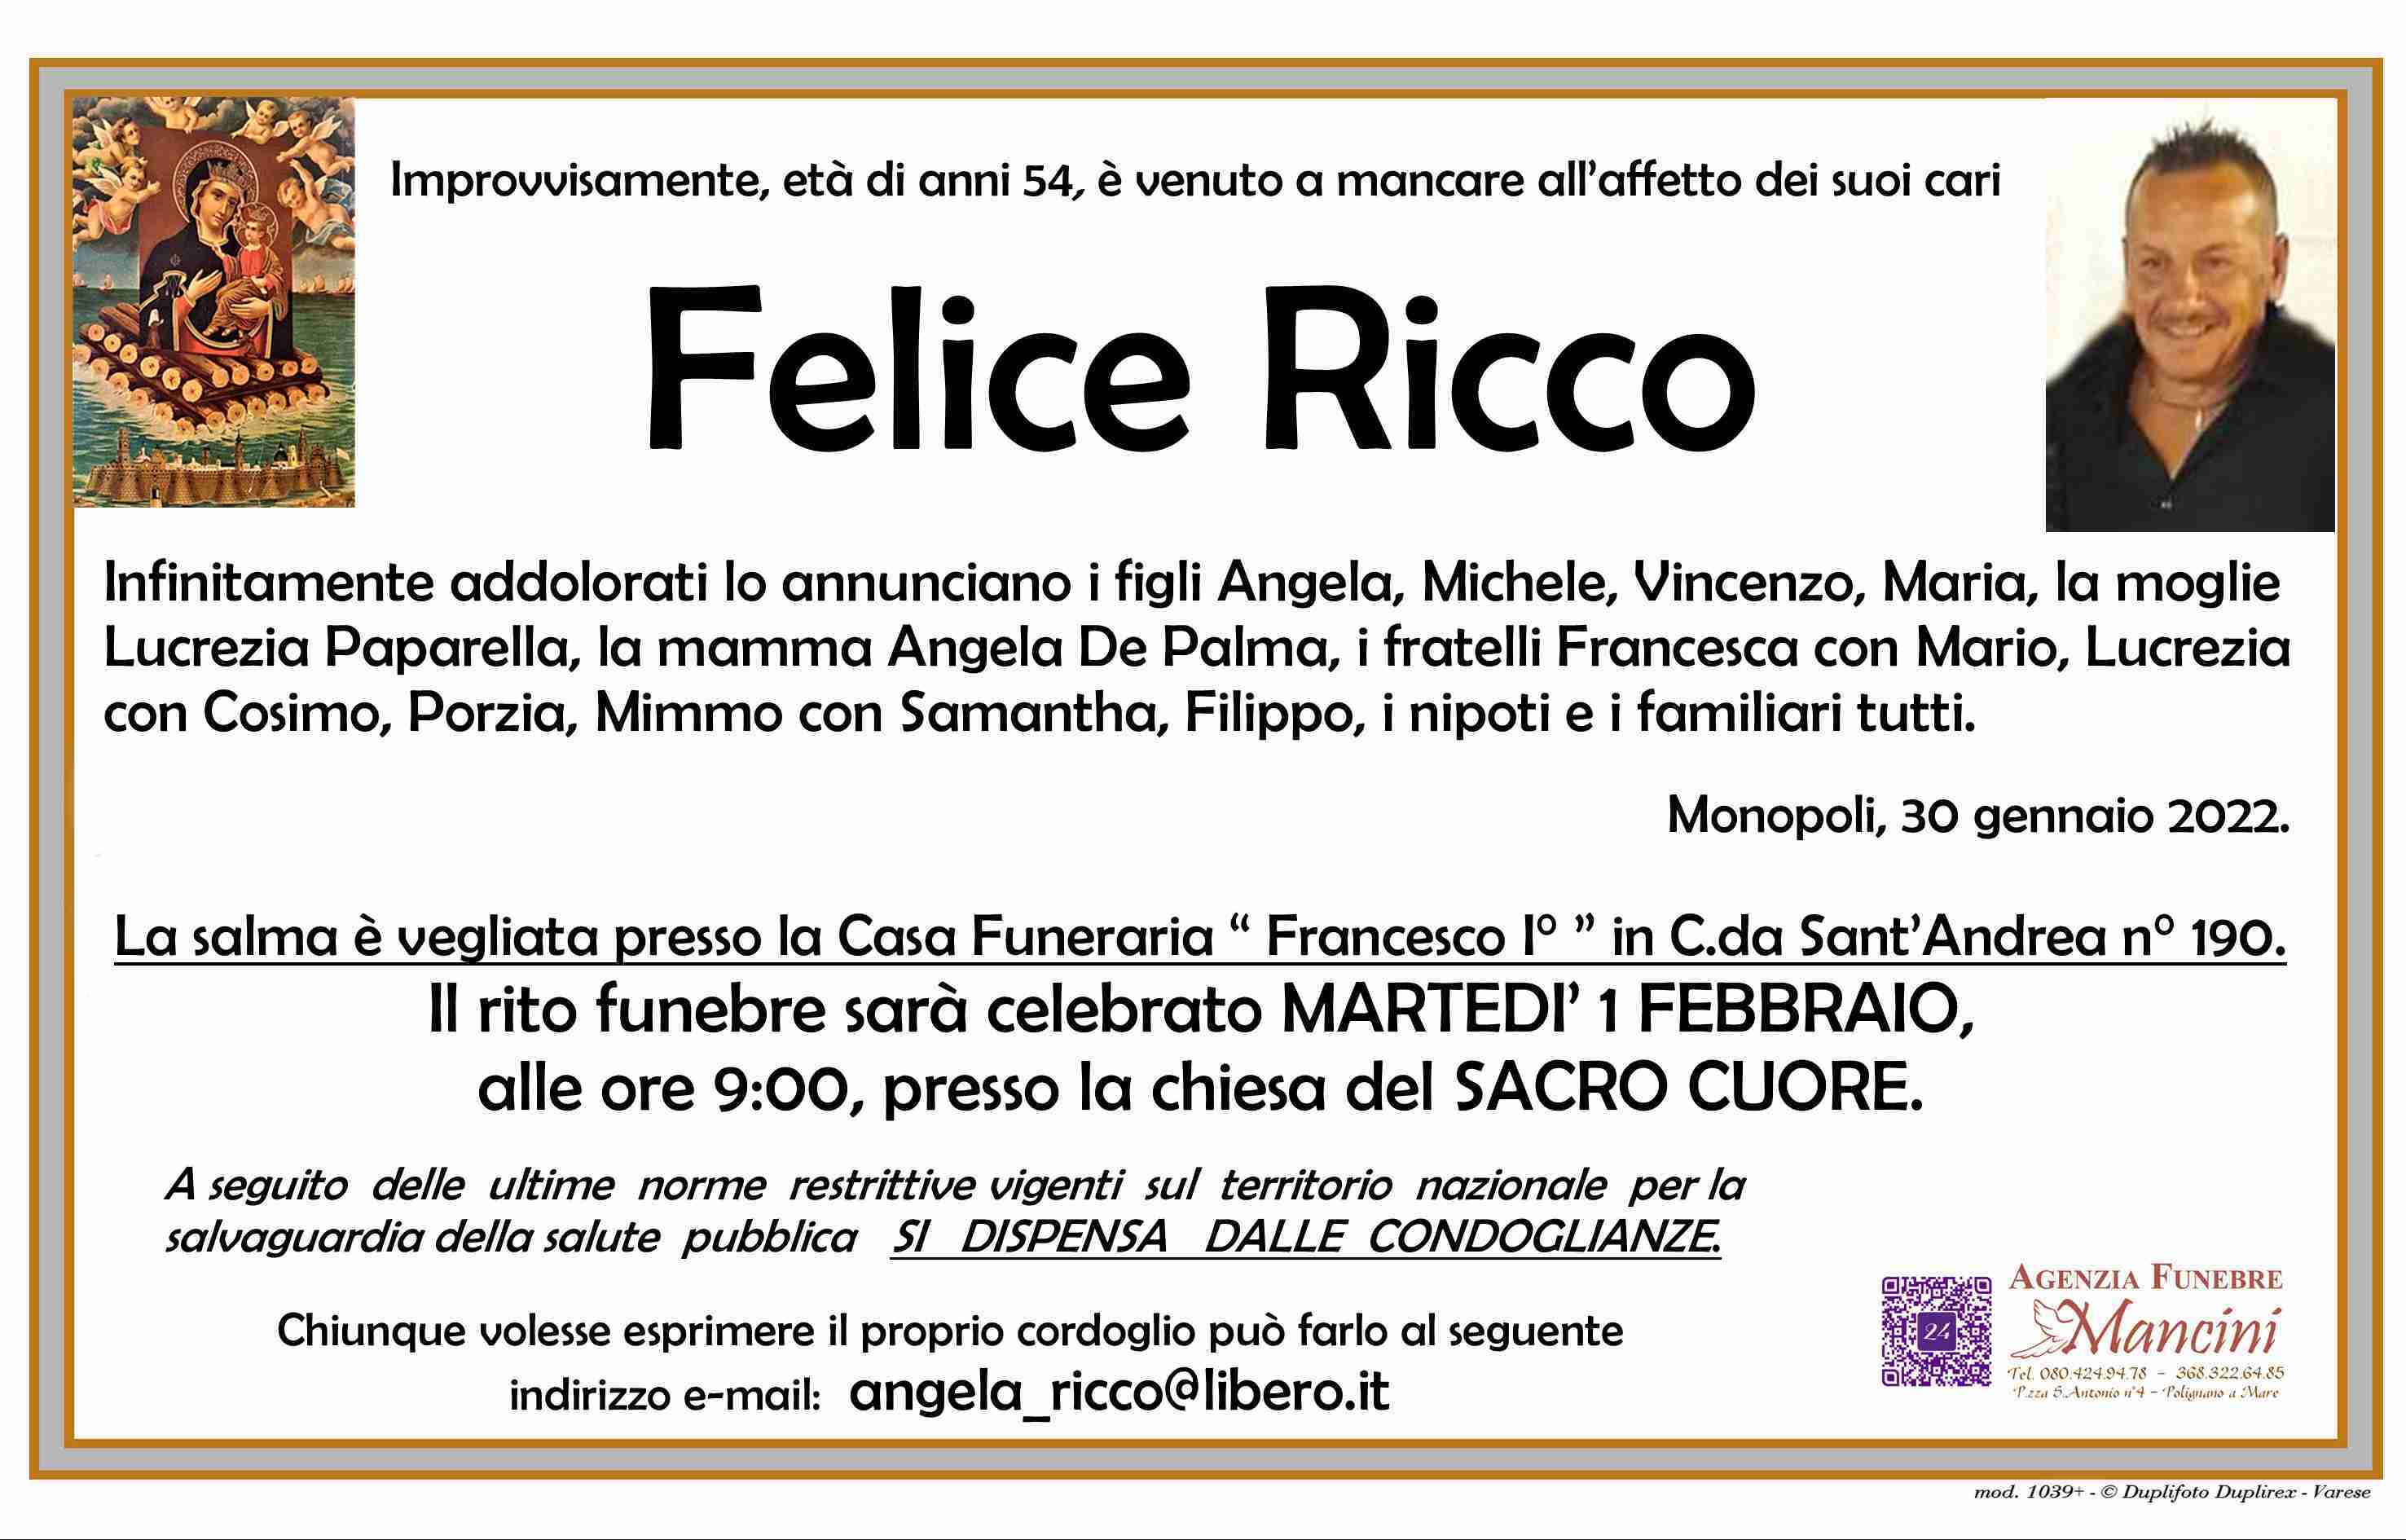 Felice Ricco